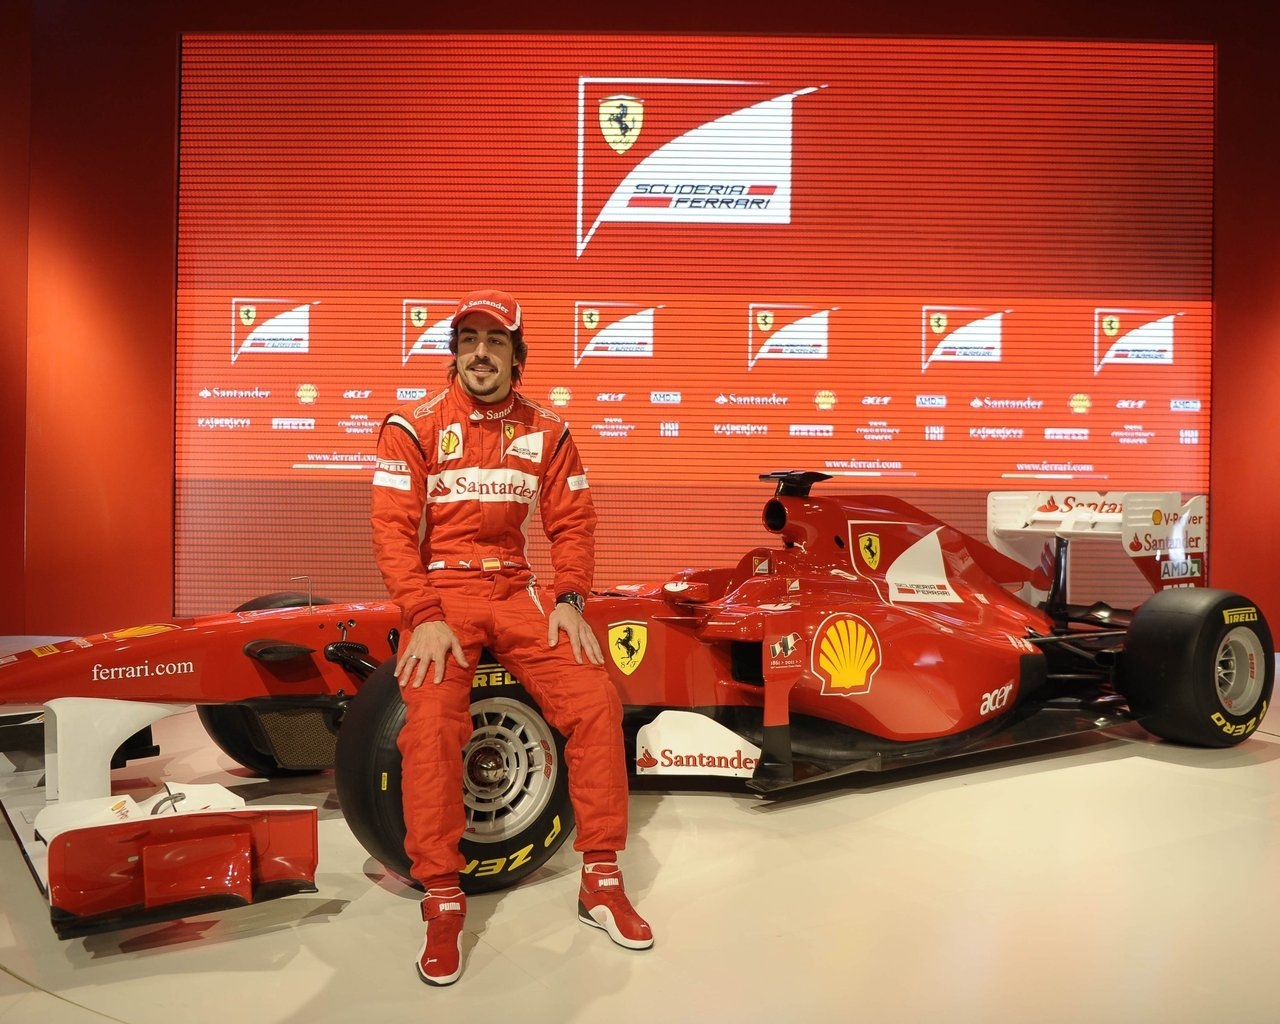 Fernando Alonso Ferrari for 1280 x 1024 resolution